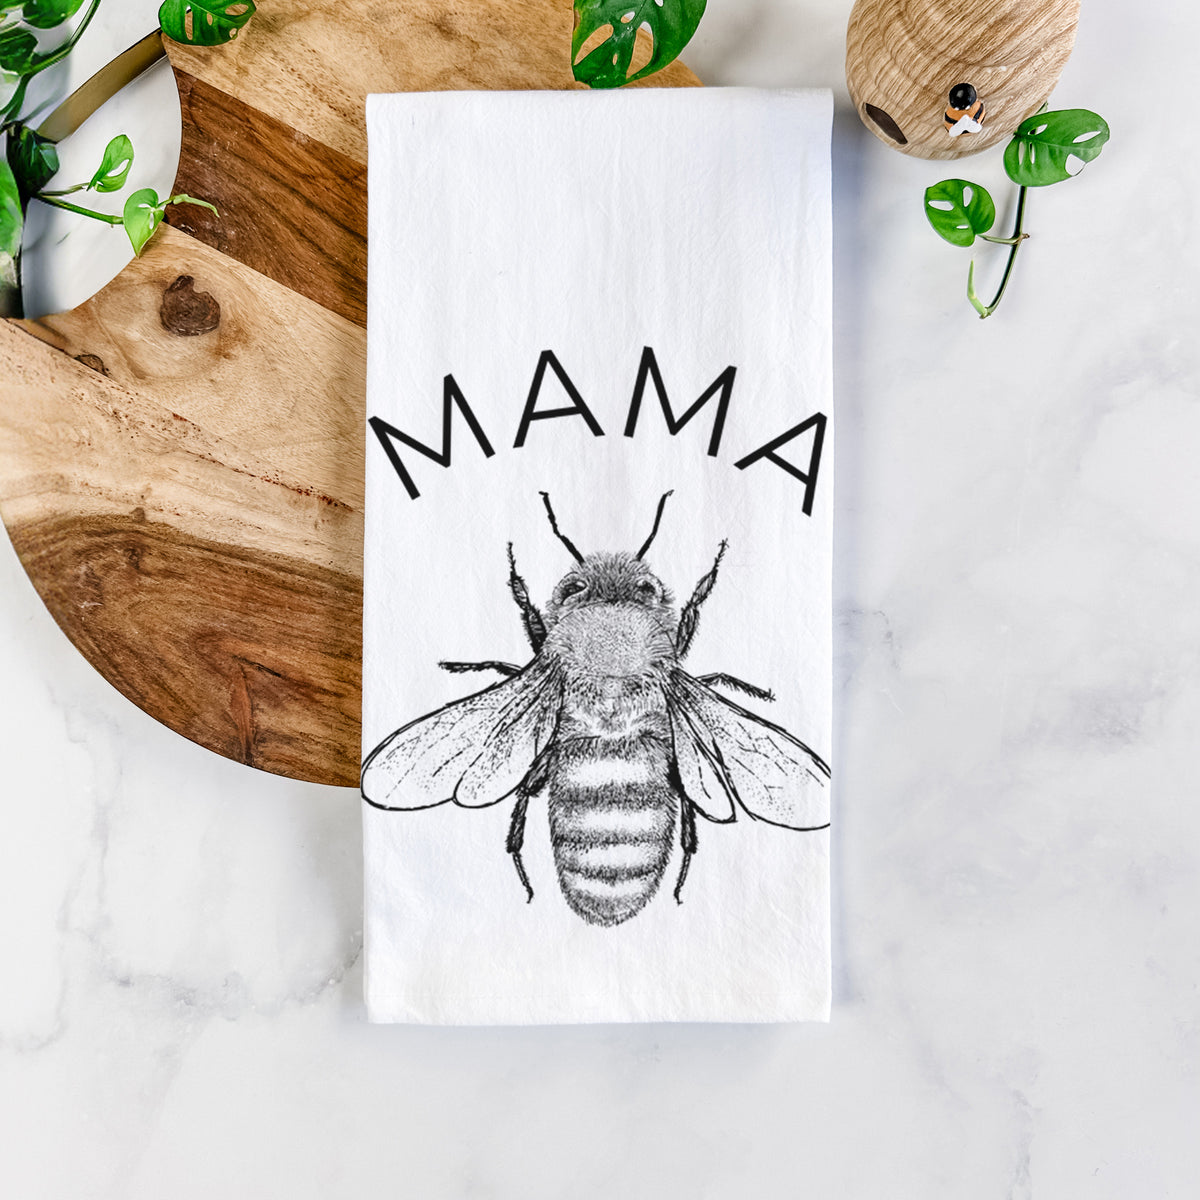 Mama Bee Tea Towel